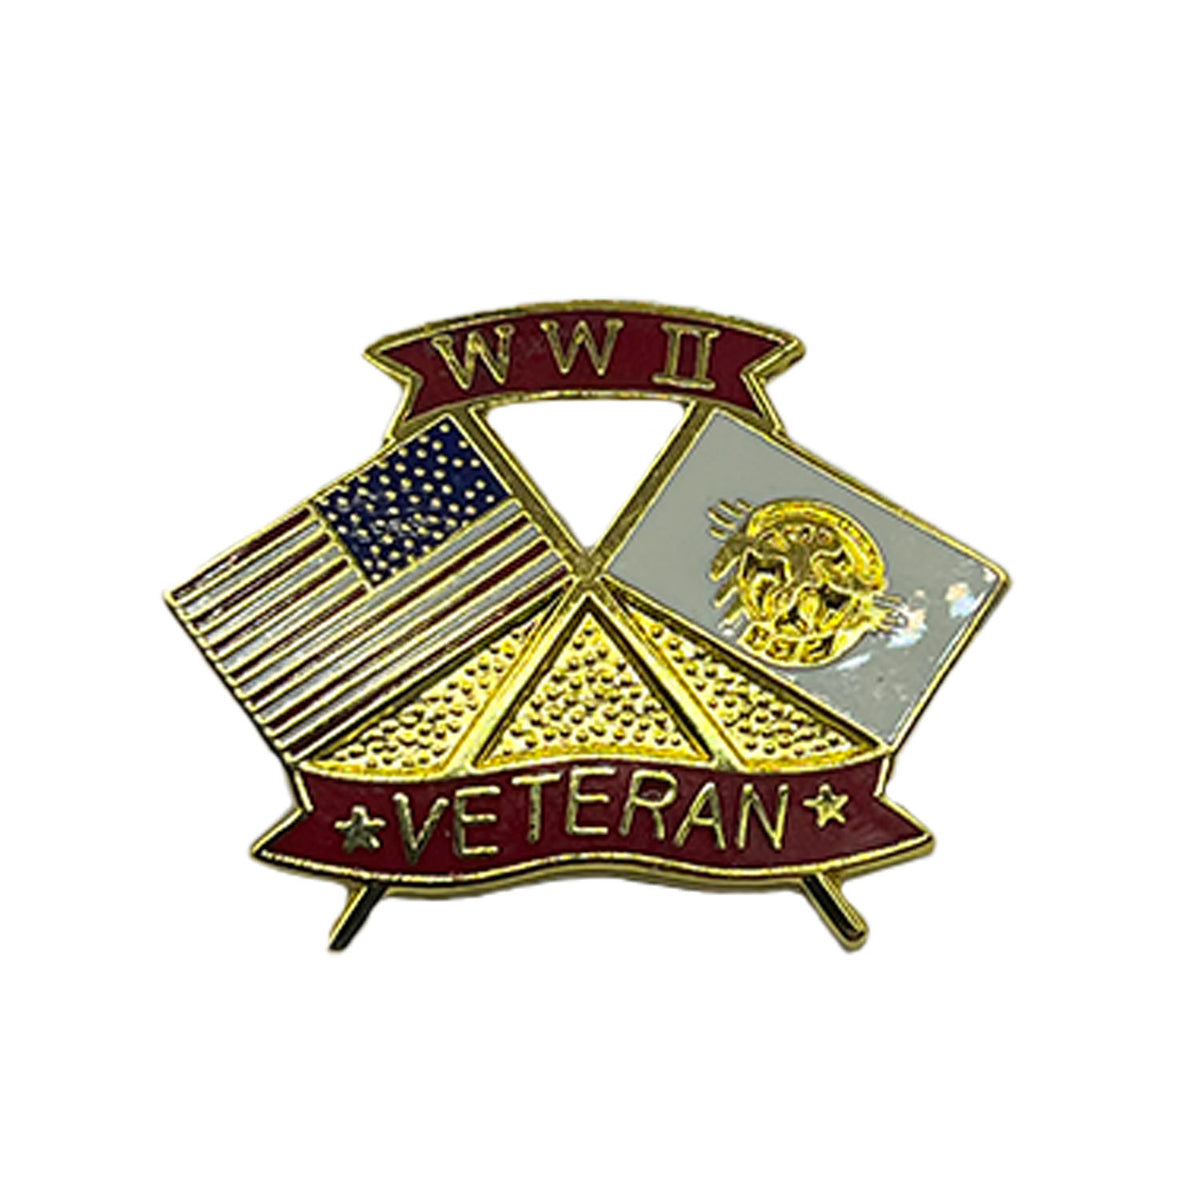 WW2 veteran metal pin